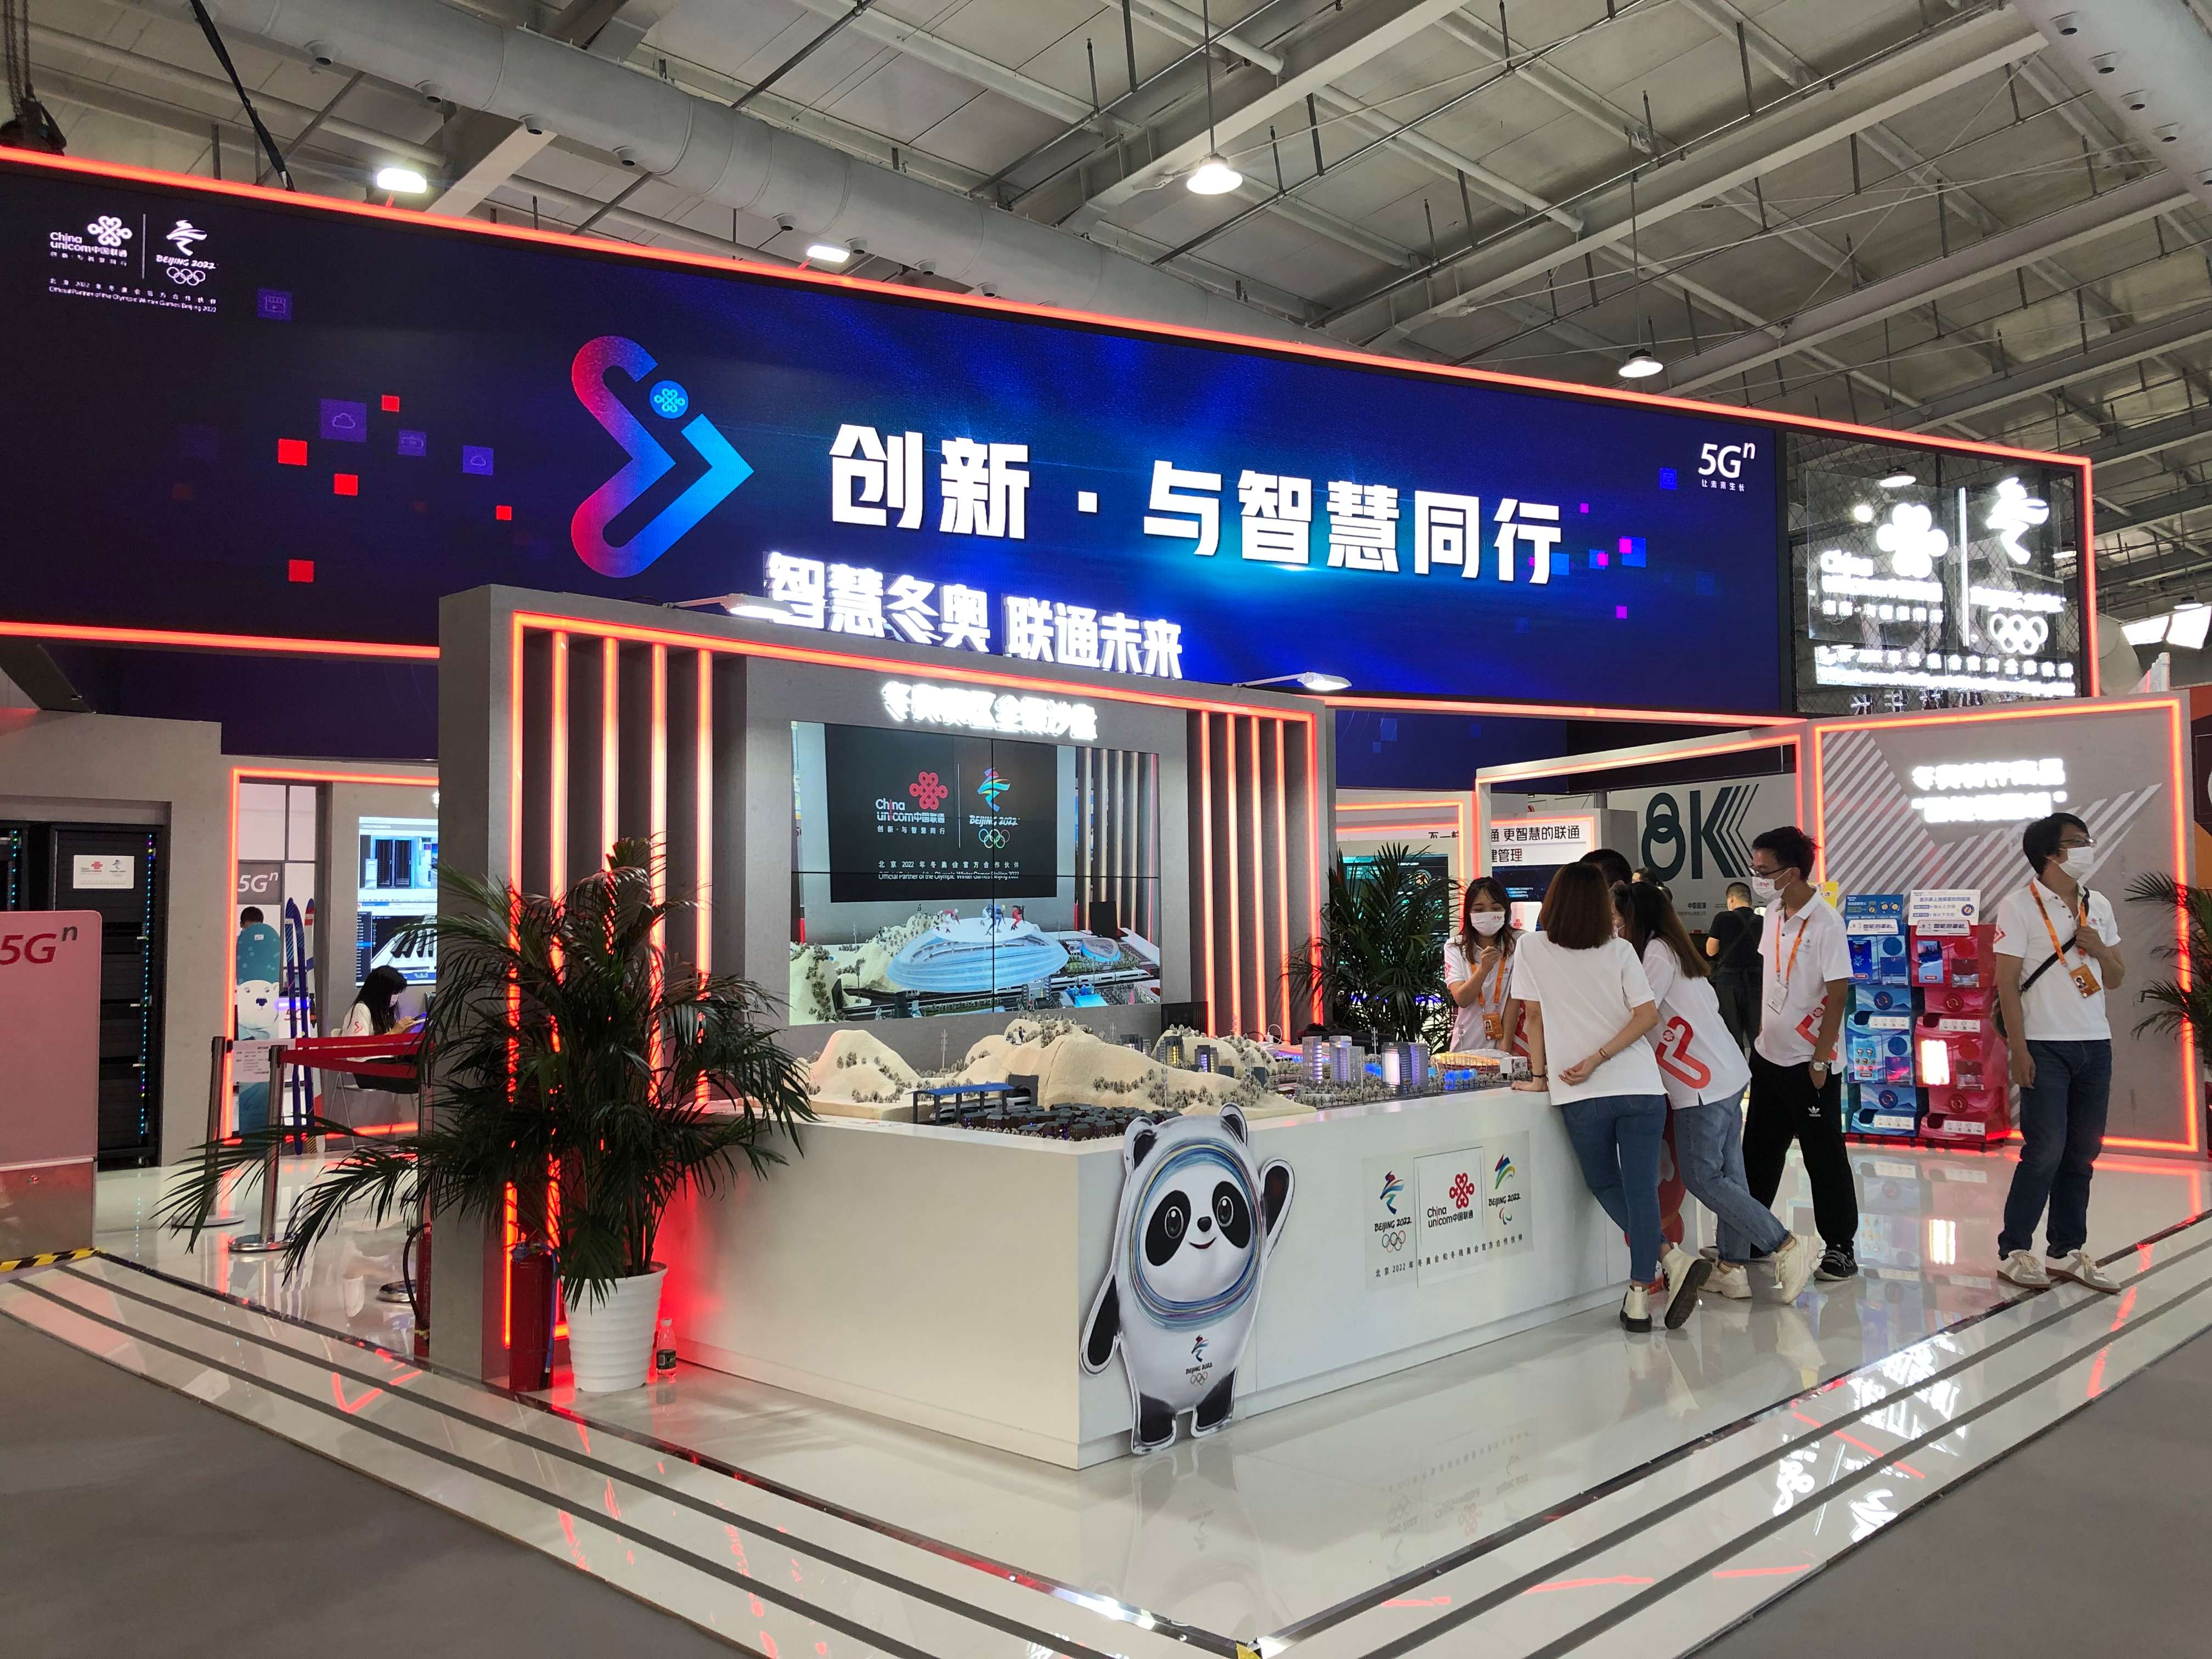 電信、計算機、信息服務展館中國聯通展示的智慧冬奧。人民網記者石麗峰 攝